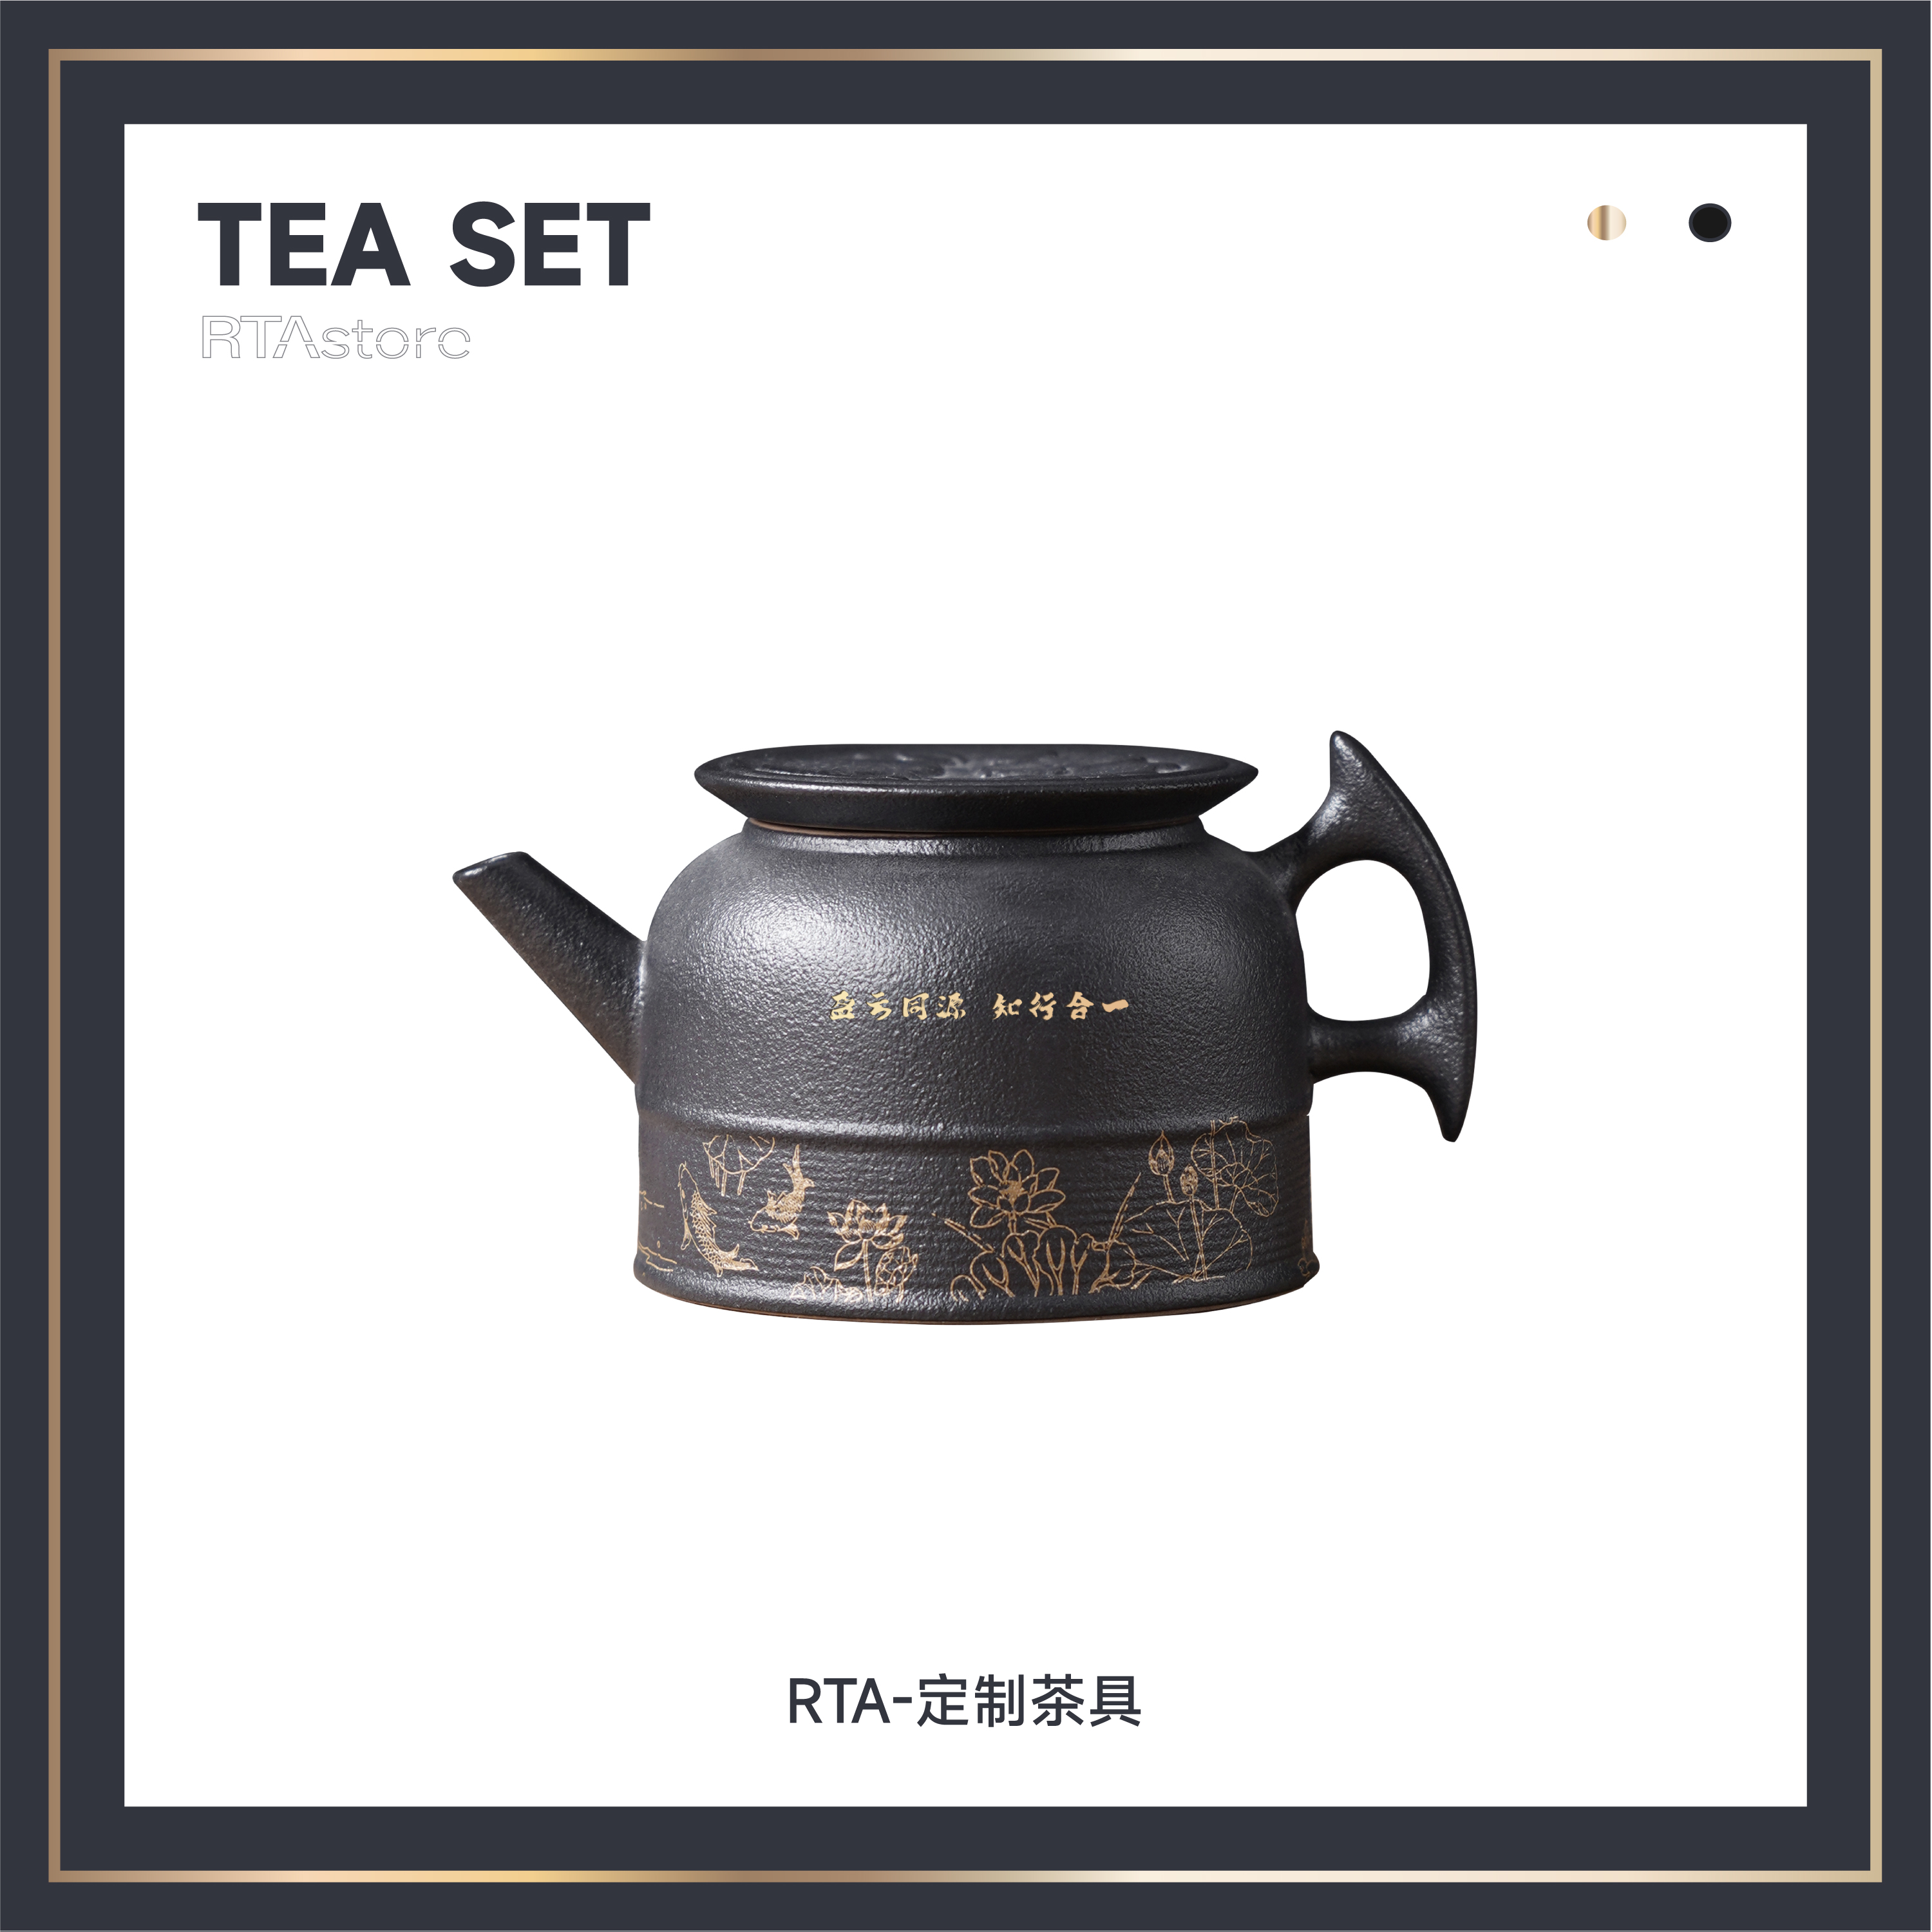 RTA-限量茶具